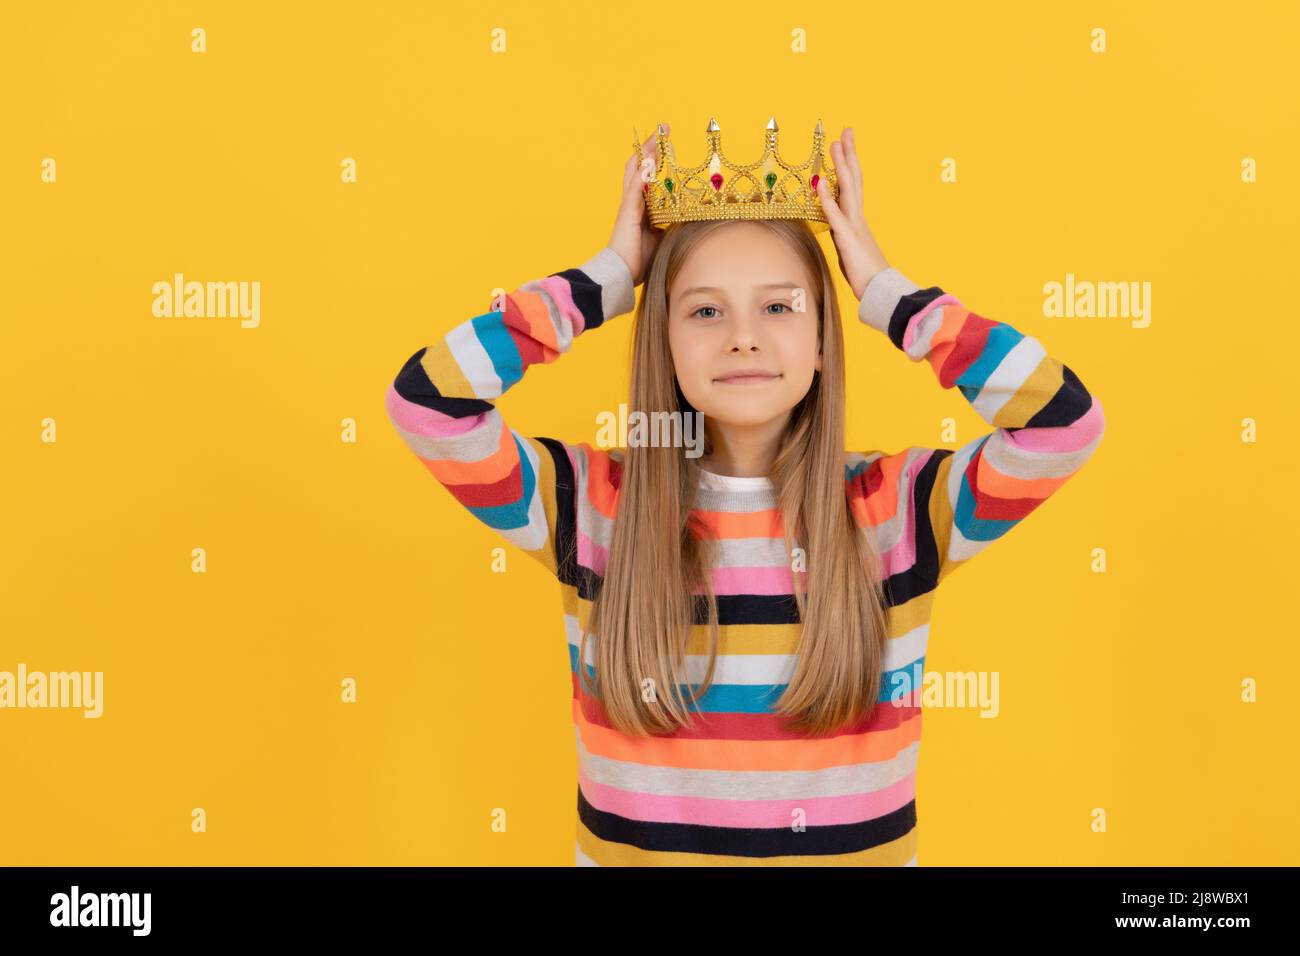 Egoistisches Teenager-Kind in Königskrone auf gelbem Hintergrund Stockfoto